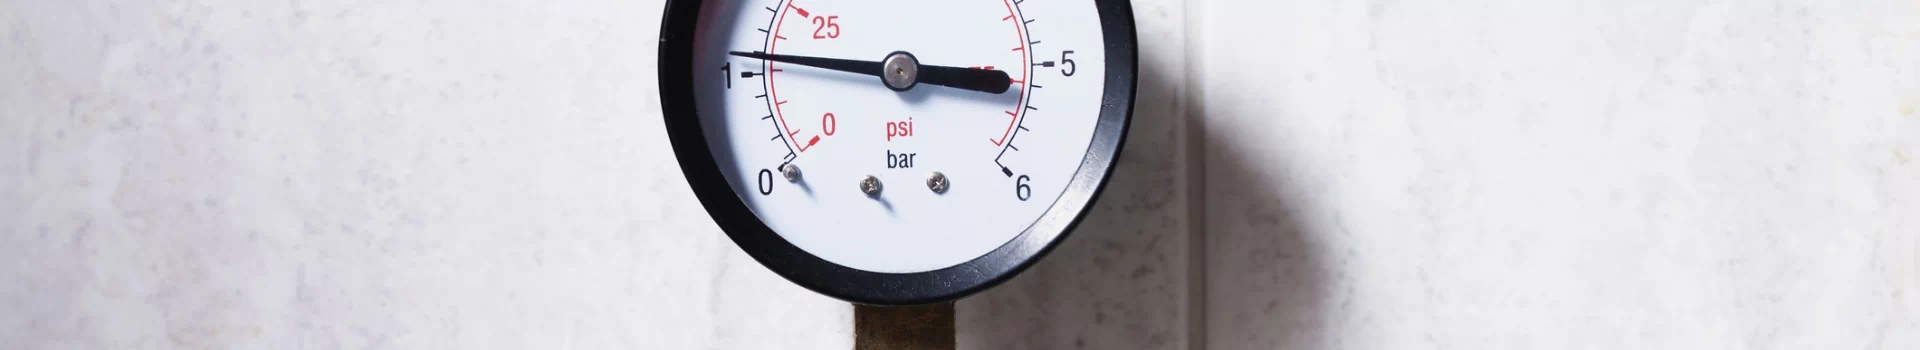 wskaźnik ciśnienia instalacji gazowej